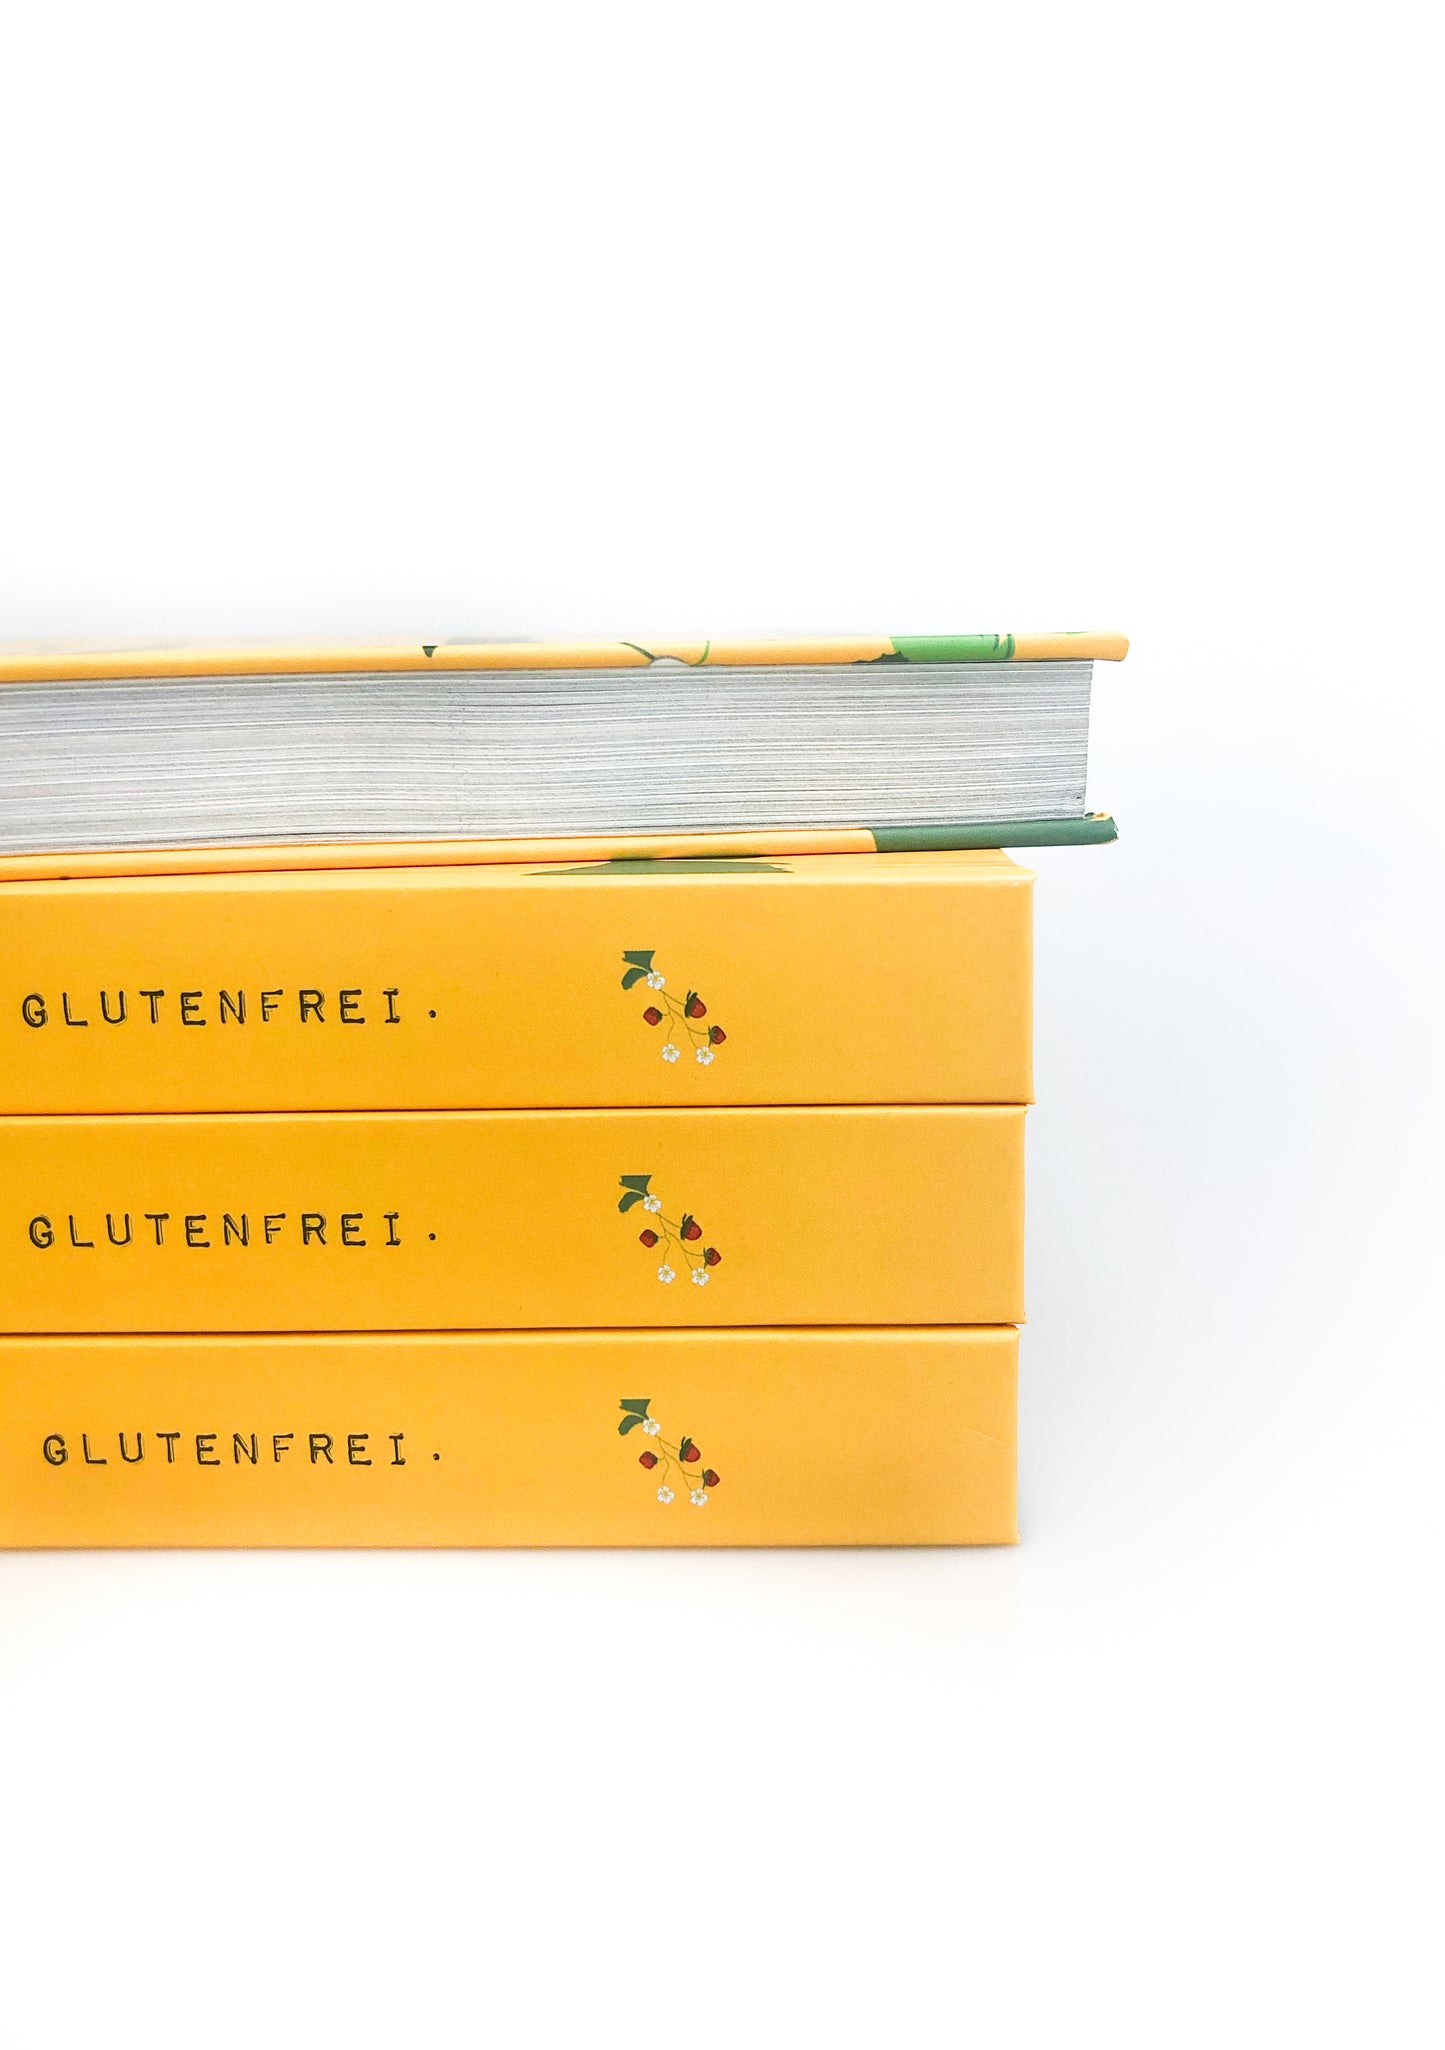 Erdbeermuddan Kochbuch - backt & kocht Glutenfrei - Hardcover